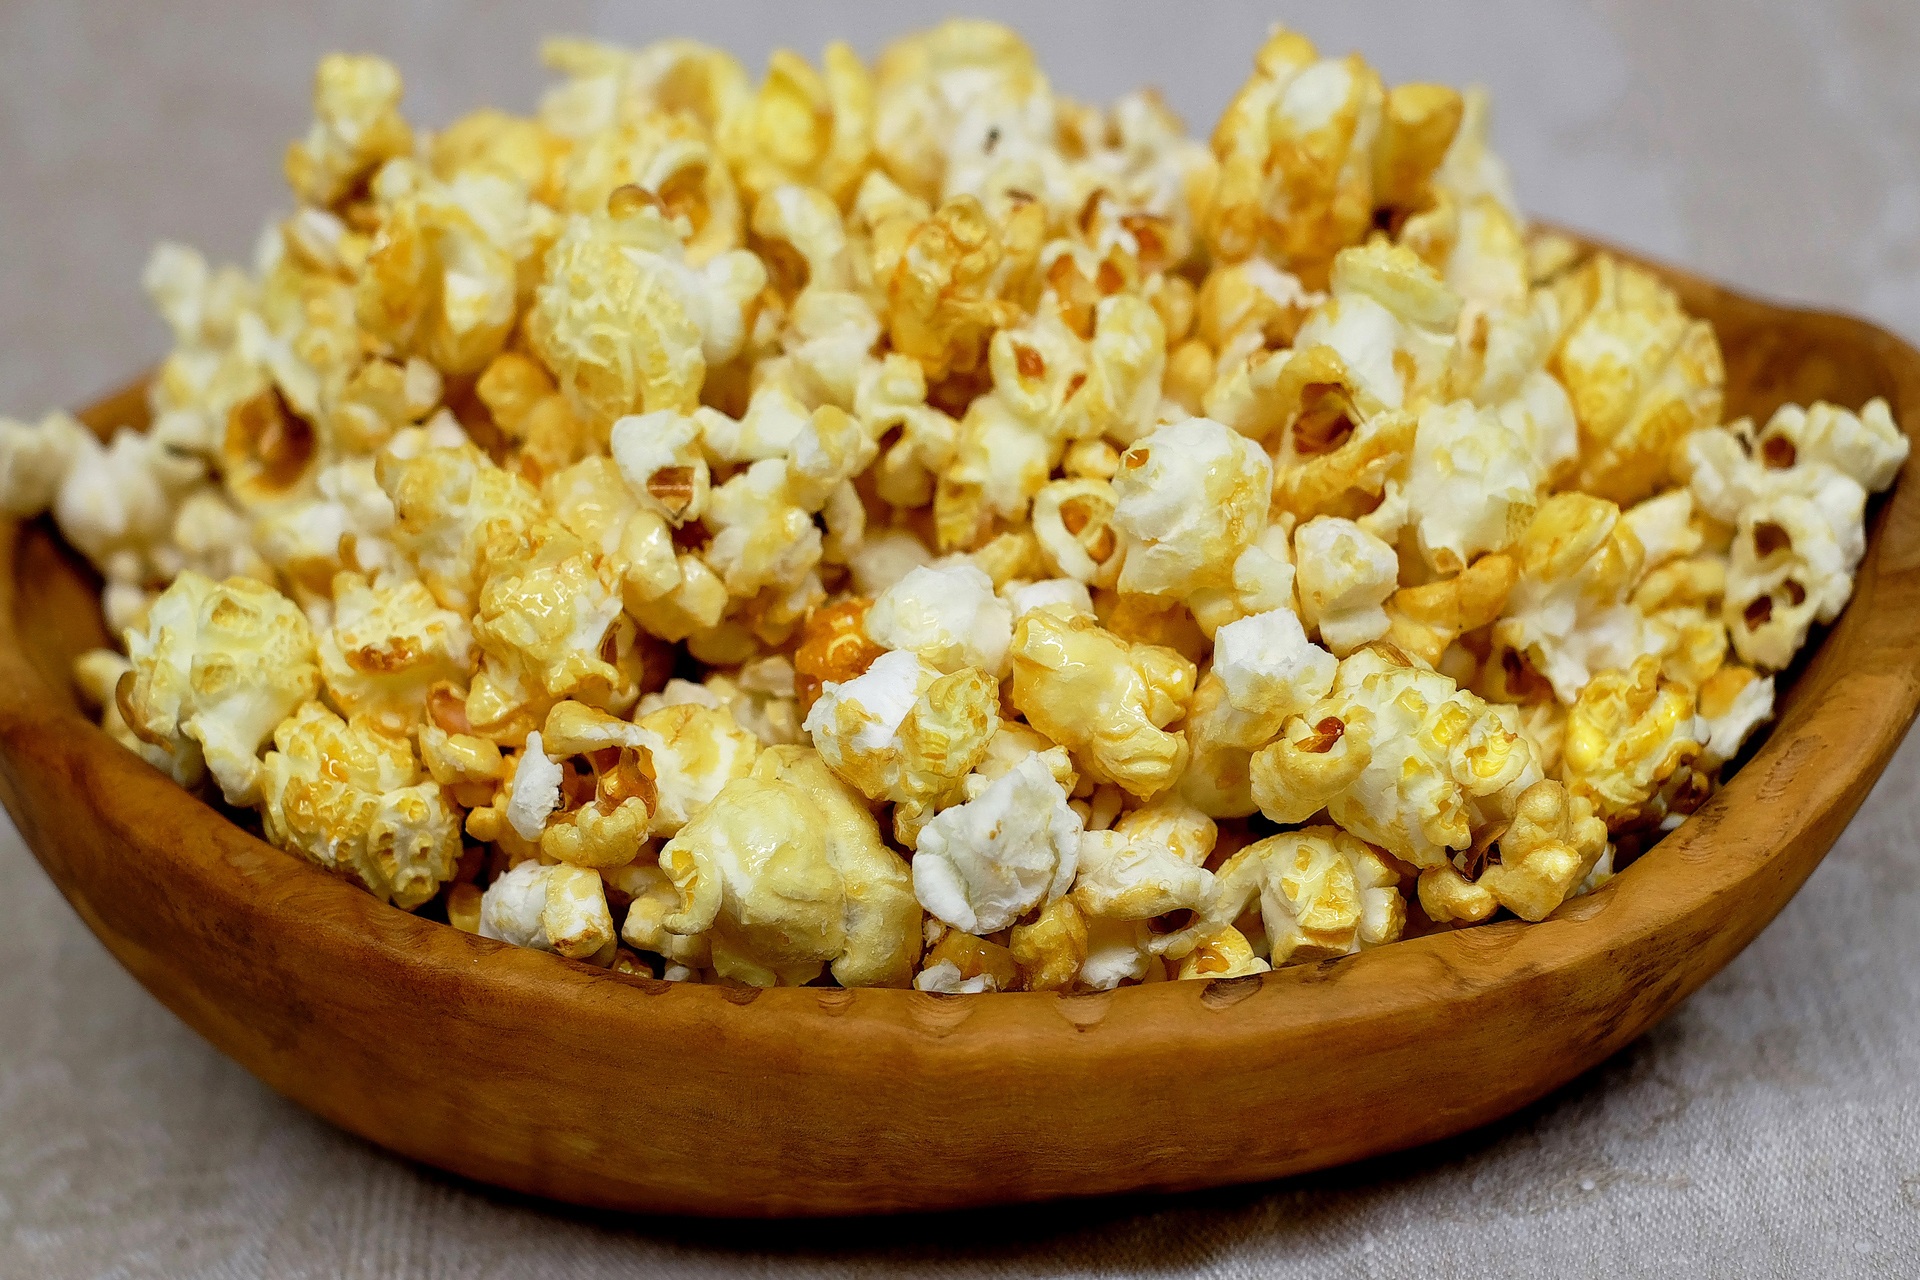 Popcorn bez tłuszczu - jak szybko zrobić w domu?